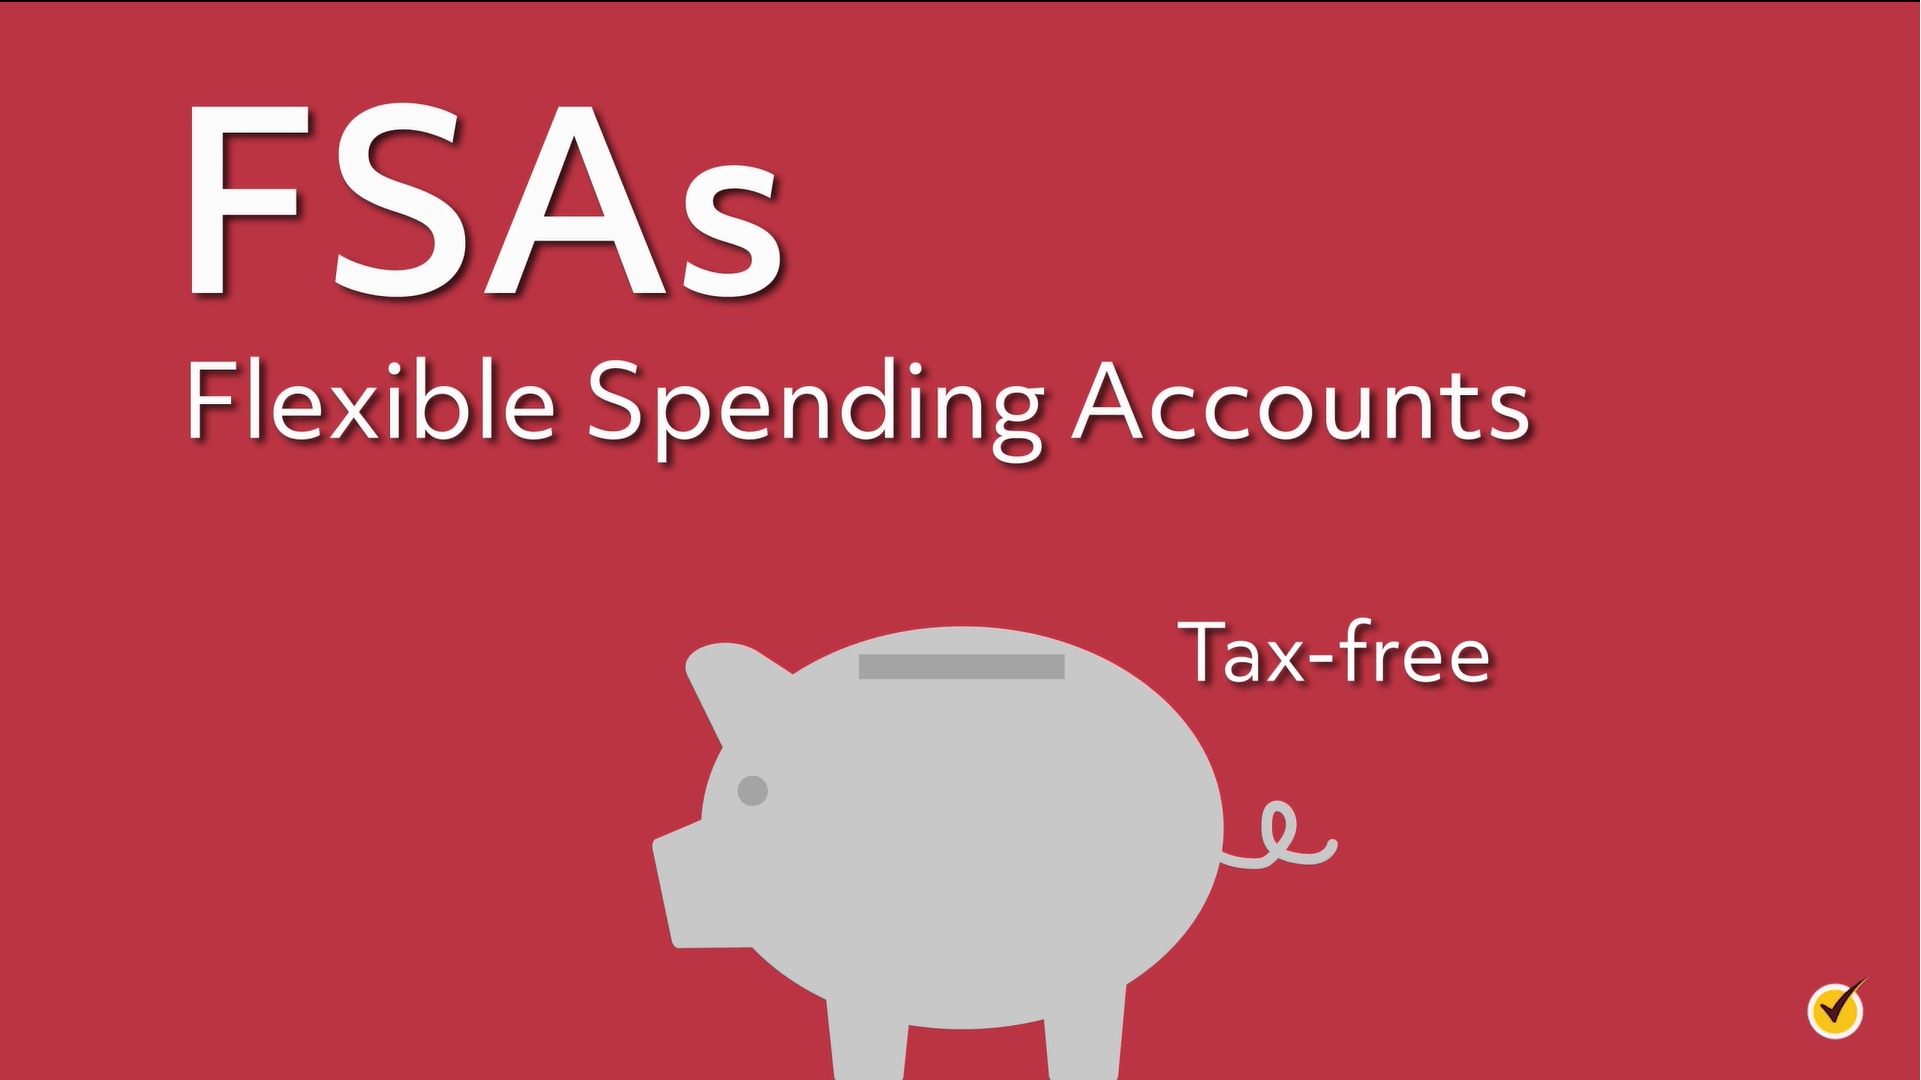 Flexible spending accounts